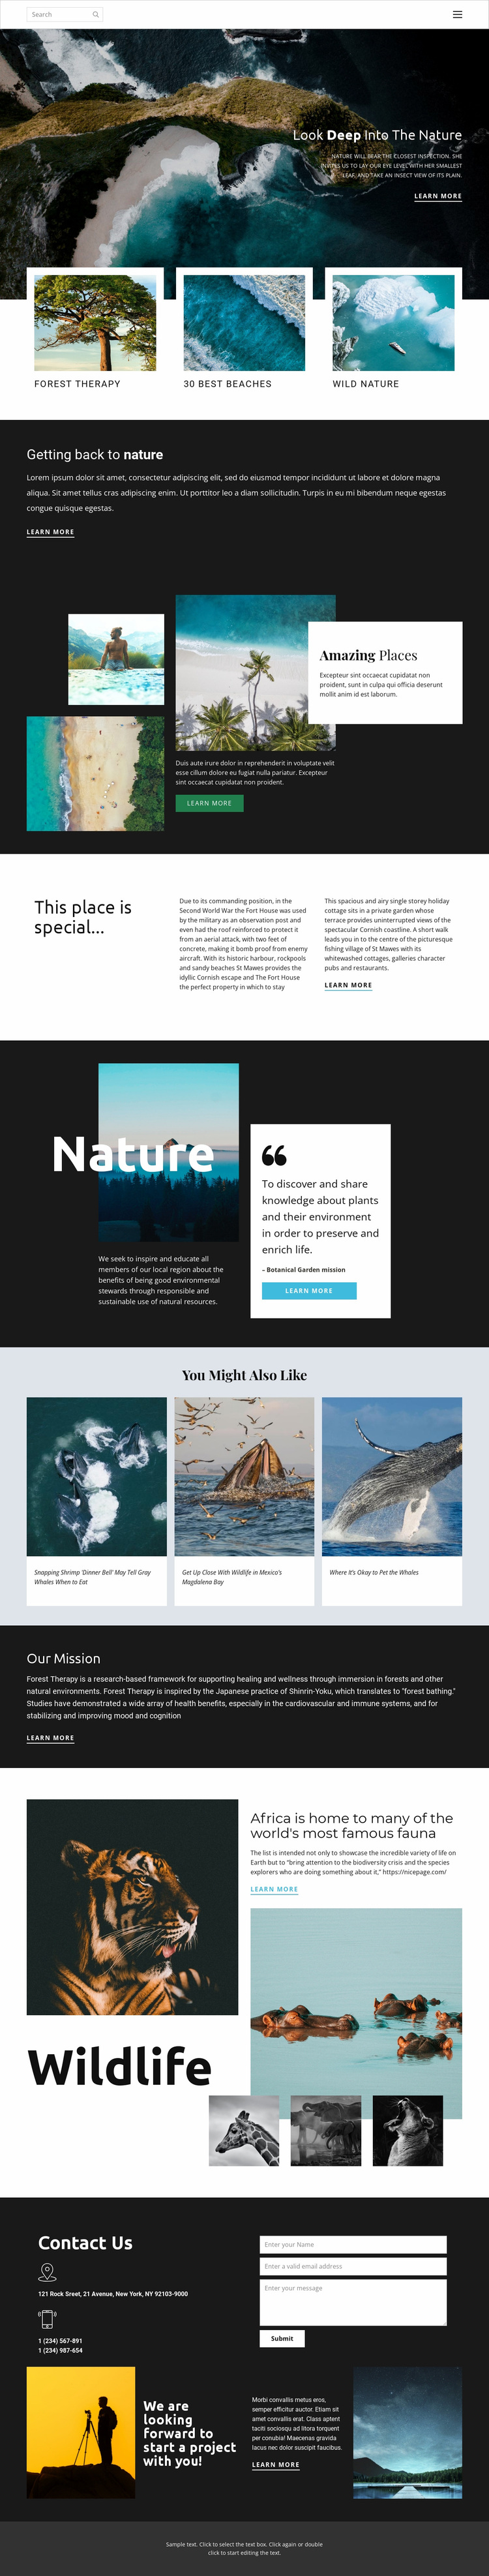 Het verkennen van dieren in het wild en de natuur Website ontwerp